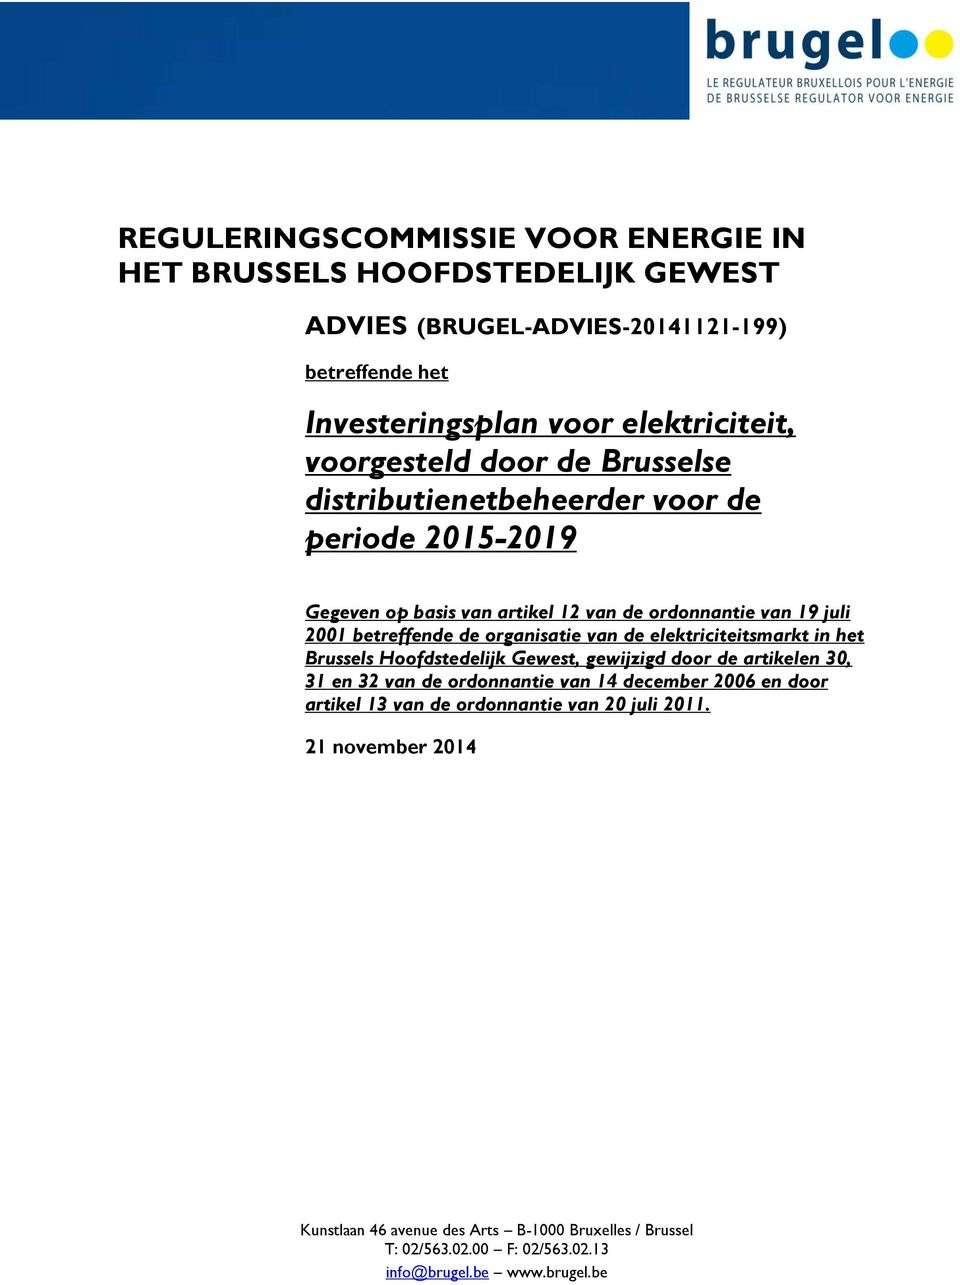 organisatie van de elektriciteitsmarkt in het Brussels Hoofdstedelijk Gewest, gewijzigd door de artikelen 30, 31 en 32 van de ordonnantie van 14 december 2006 en door